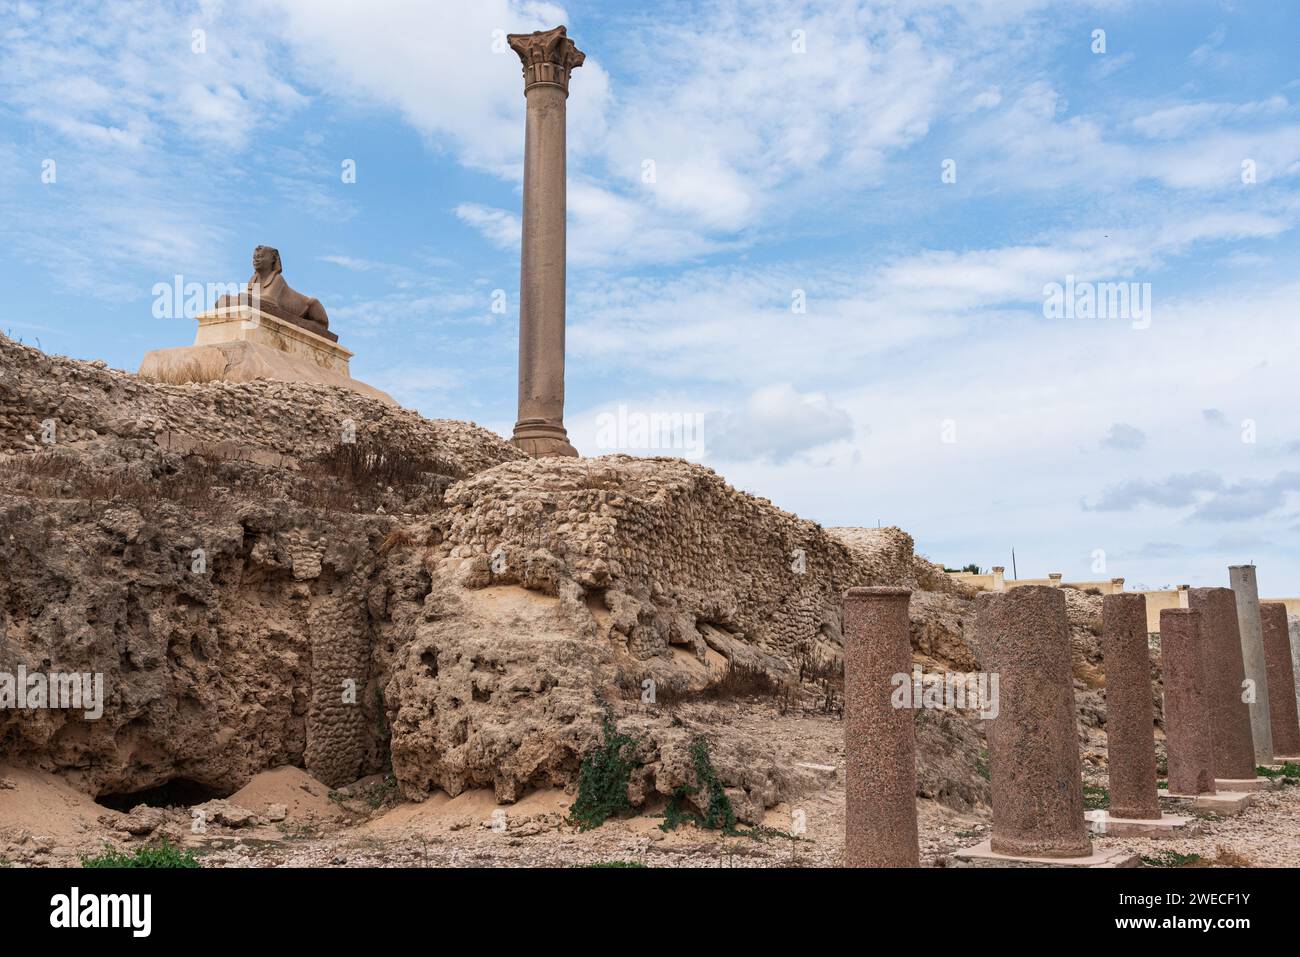 Il pilastro di Pompeo in Egitto: Un imponente monumento antico che mette in mostra la maestria architettonica e la ricchezza storica di Alessandria. Foto Stock